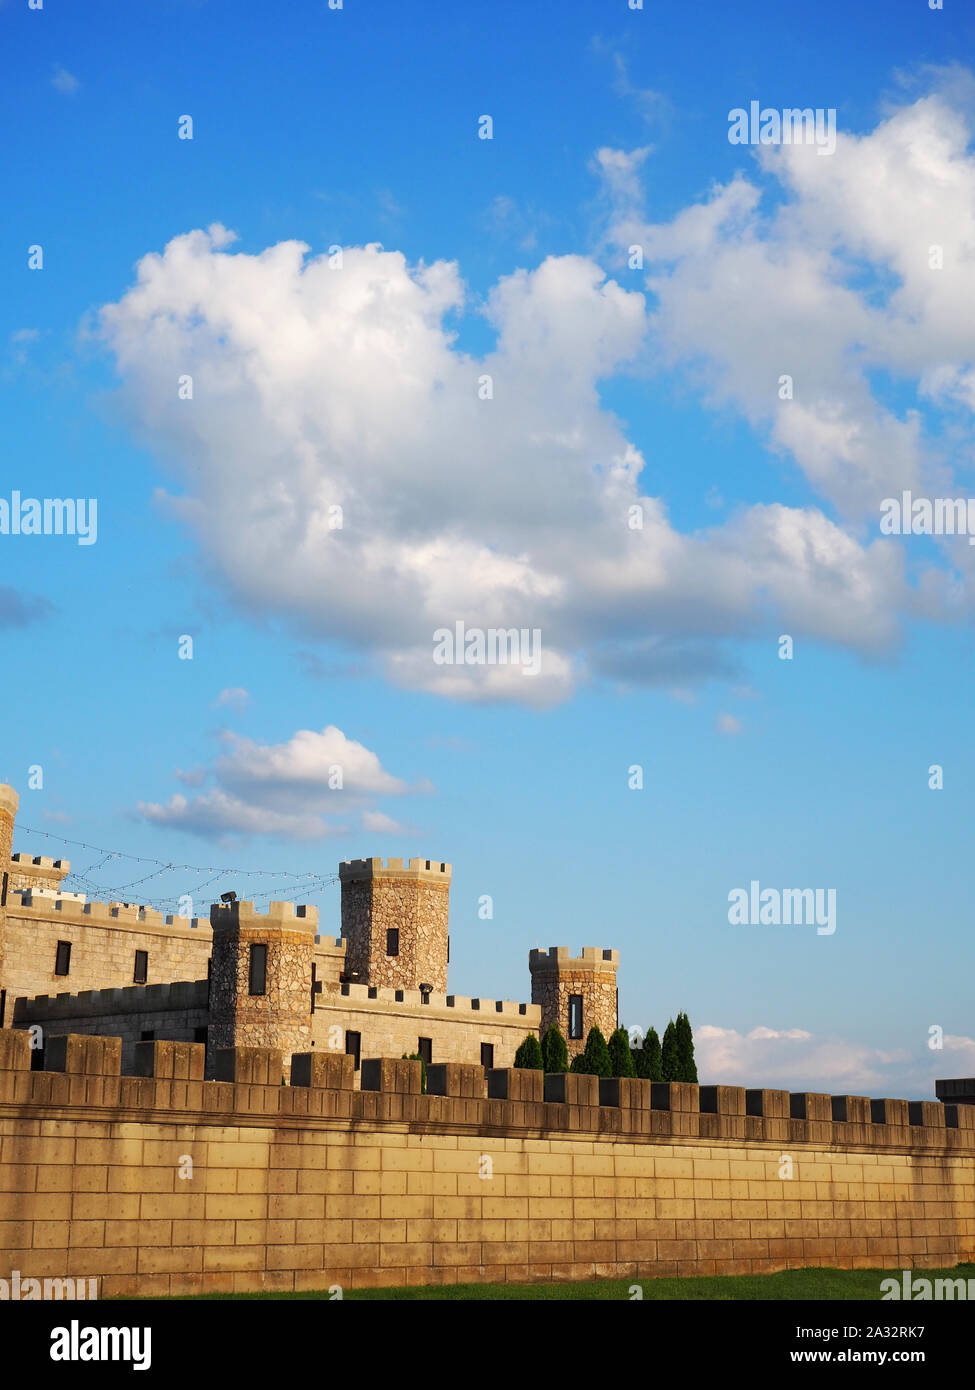 Eine lange Mauer mit Zinnen vor einem mittelalterlichen Stil steinerne Burg bietet Schutz zu den wichtigsten Teil der Burg, bekannt als das halten. Stockfoto